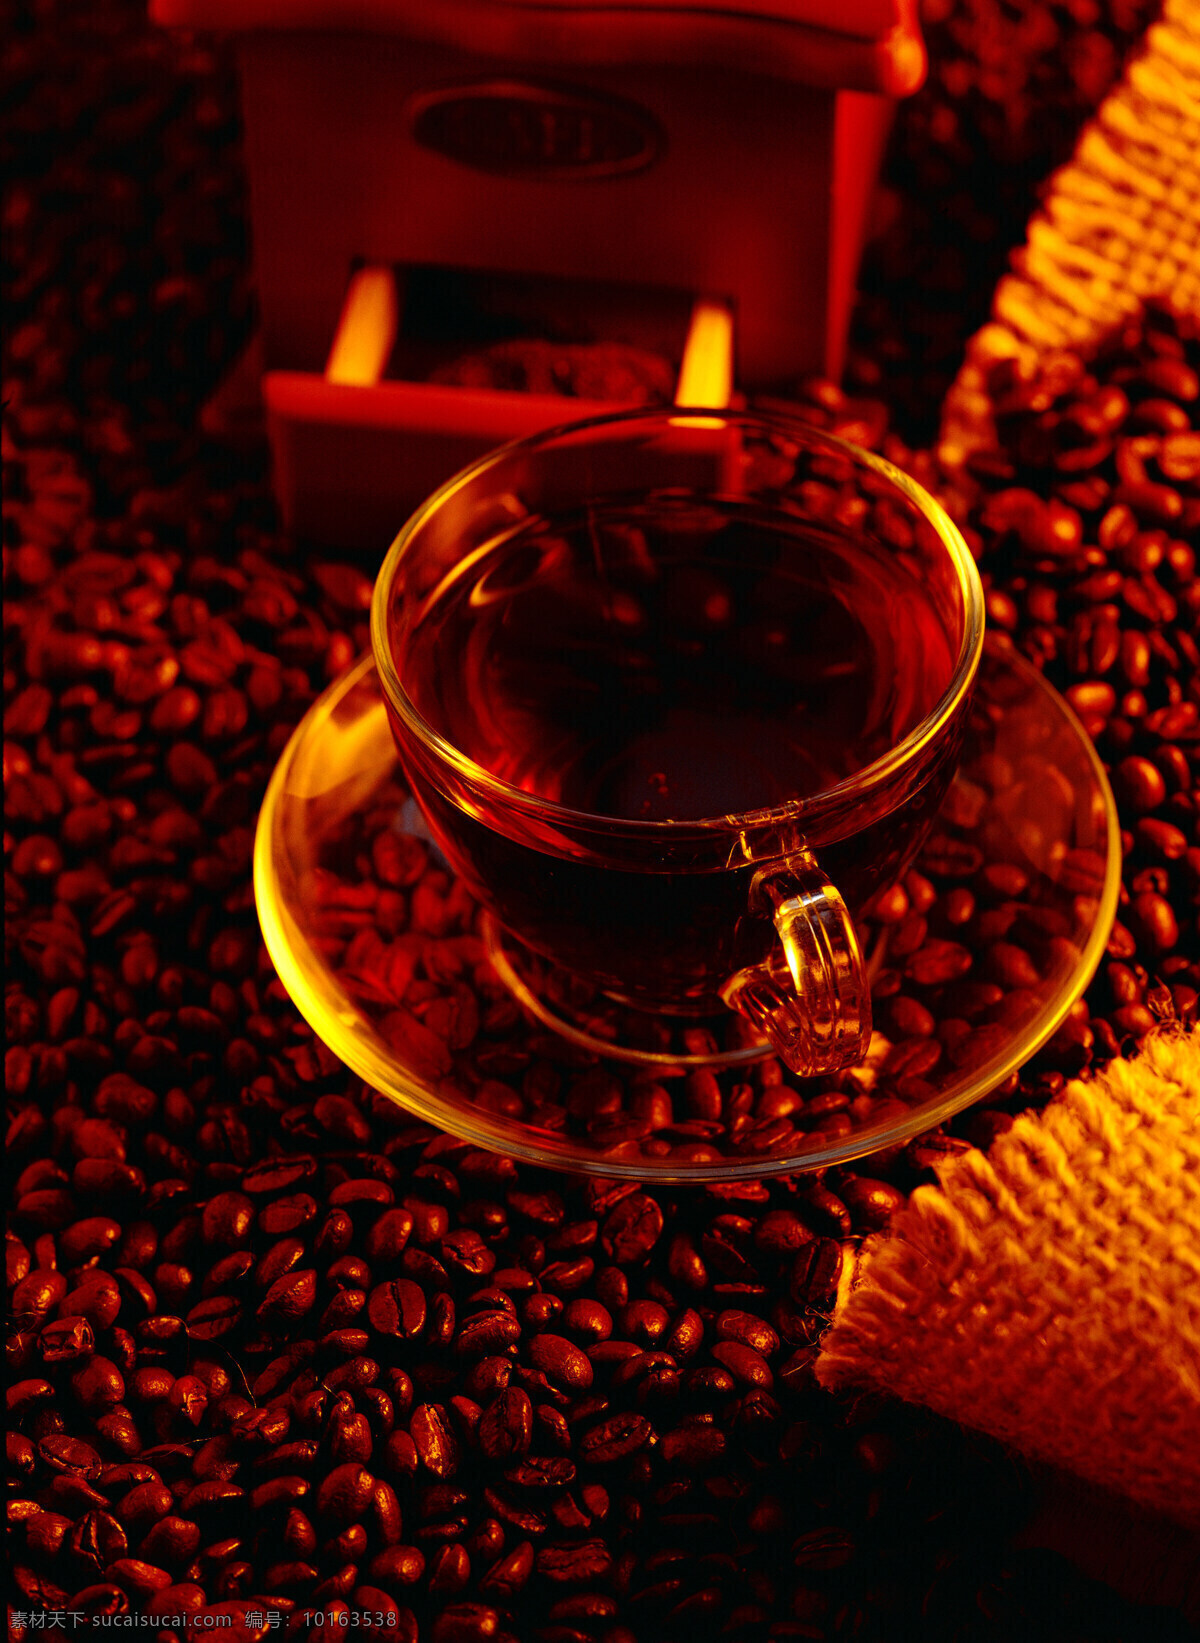 咖啡豆 托盘 咖啡 一堆咖啡豆 颗粒 果实 饱满 许多 很多 搅拌机 粉碎机 搅拌 打碎 coffee 麻袋 包装 铺垫 高清图片 咖啡图片 餐饮美食